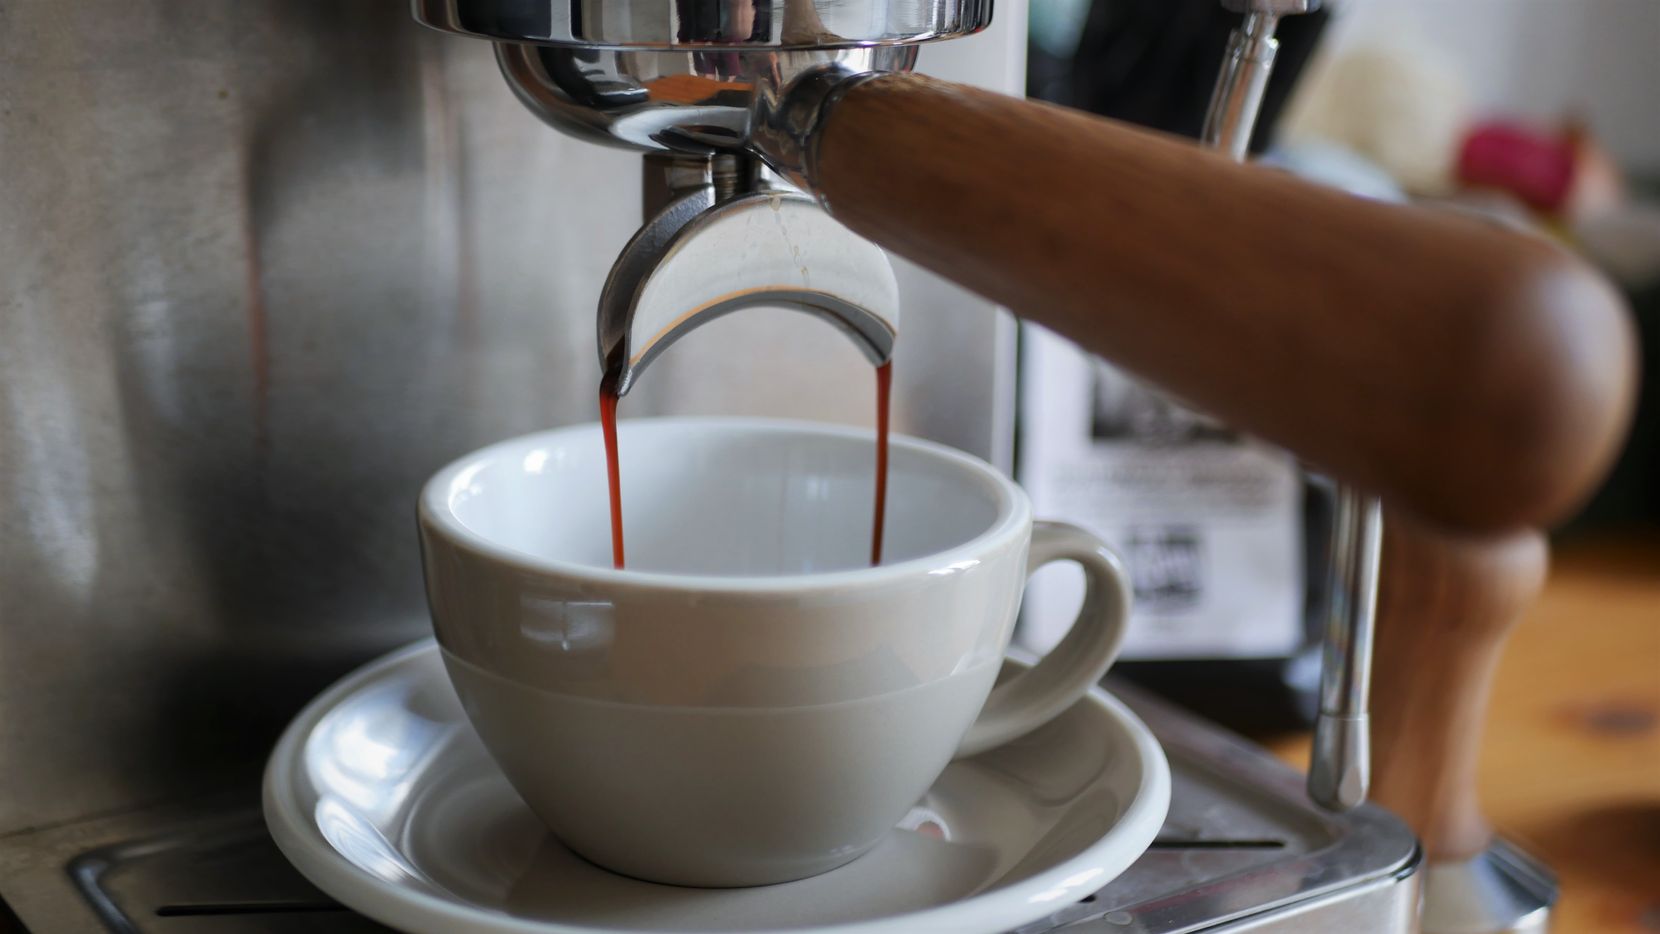 Man sieht eine halbautomatische Kaffeemaschine, aus der Espresso in eine graue Tasse fliesst.